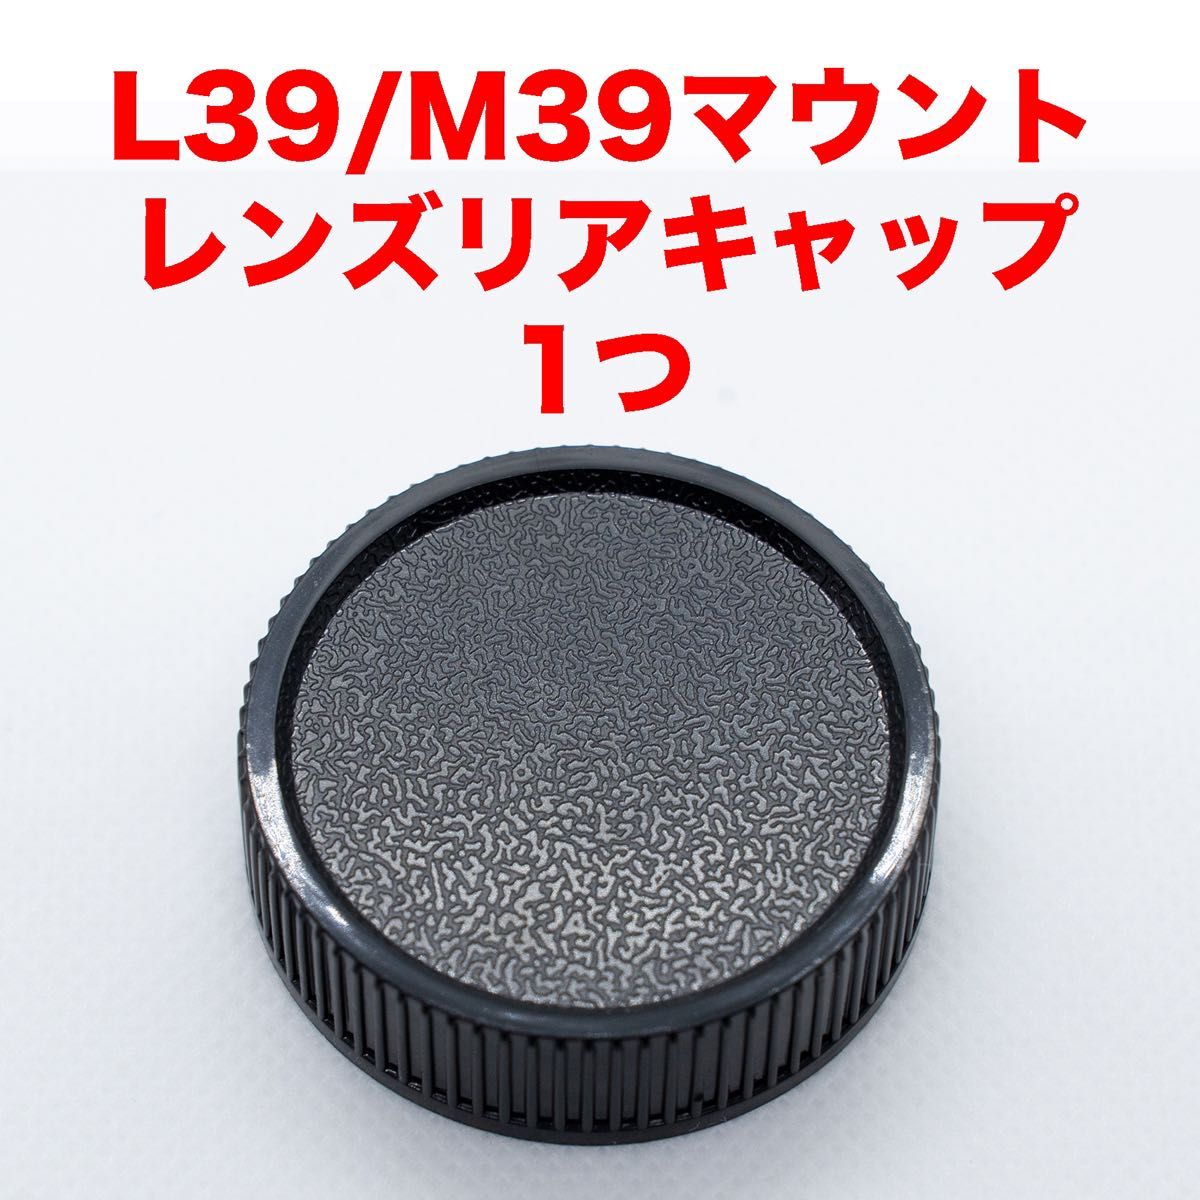 ライカ L39/M39マウント レンズリアキャップ １つ